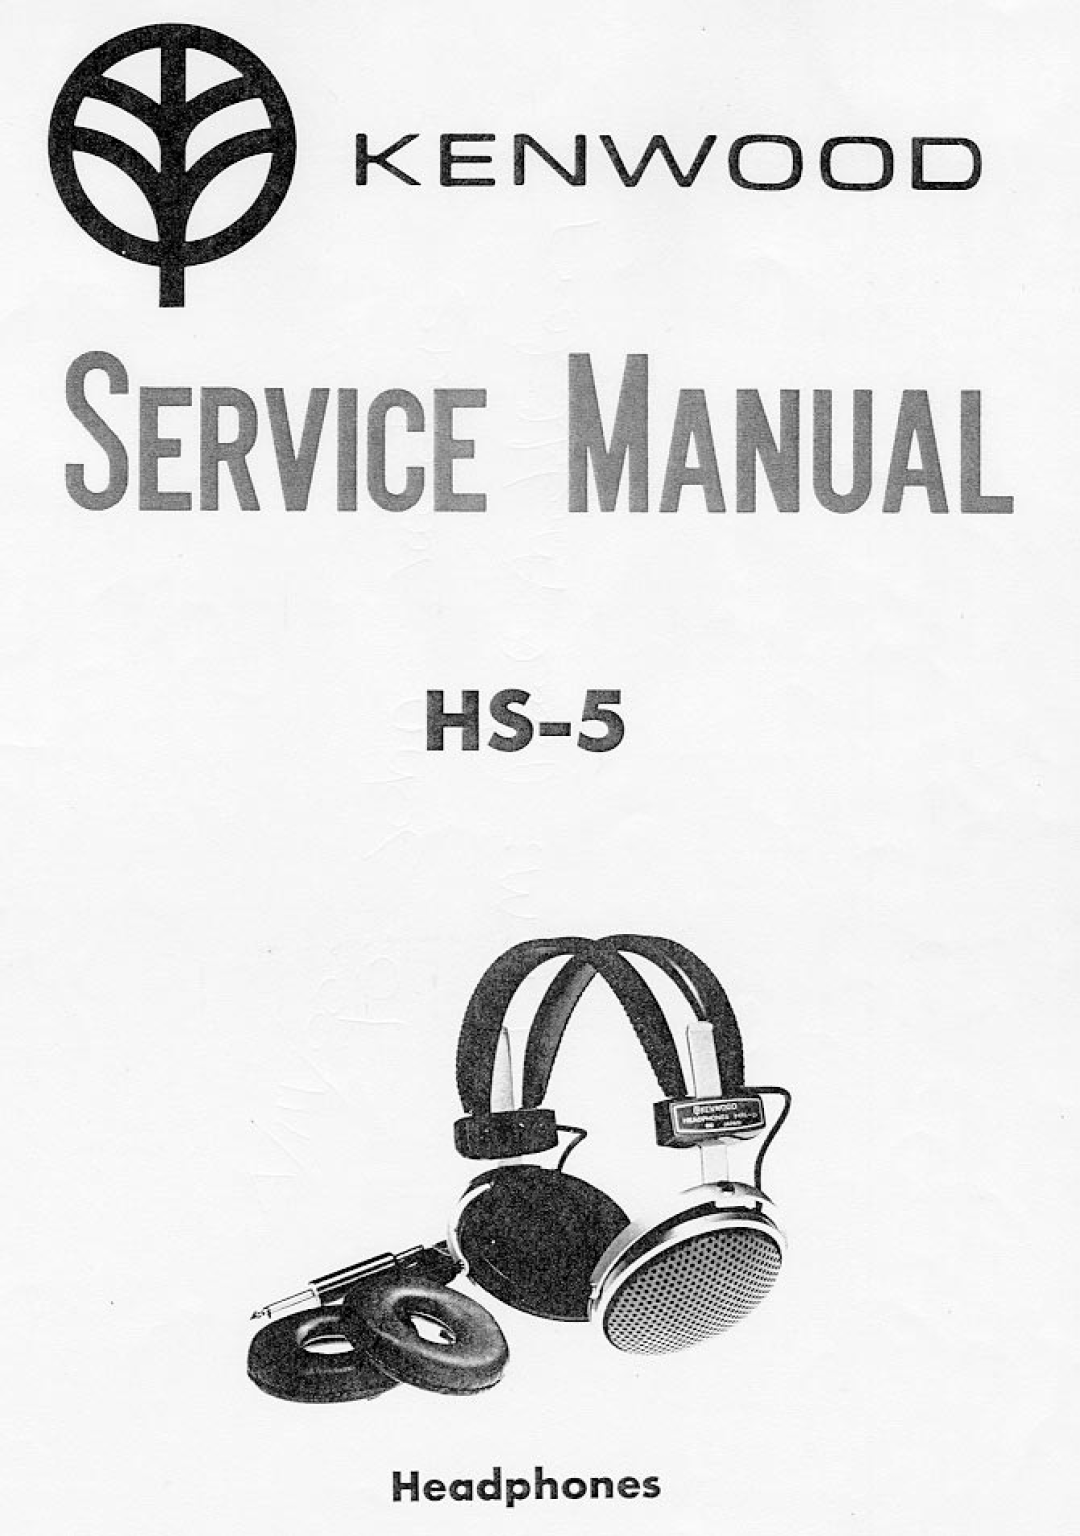 Kenwood HS-5 manual 